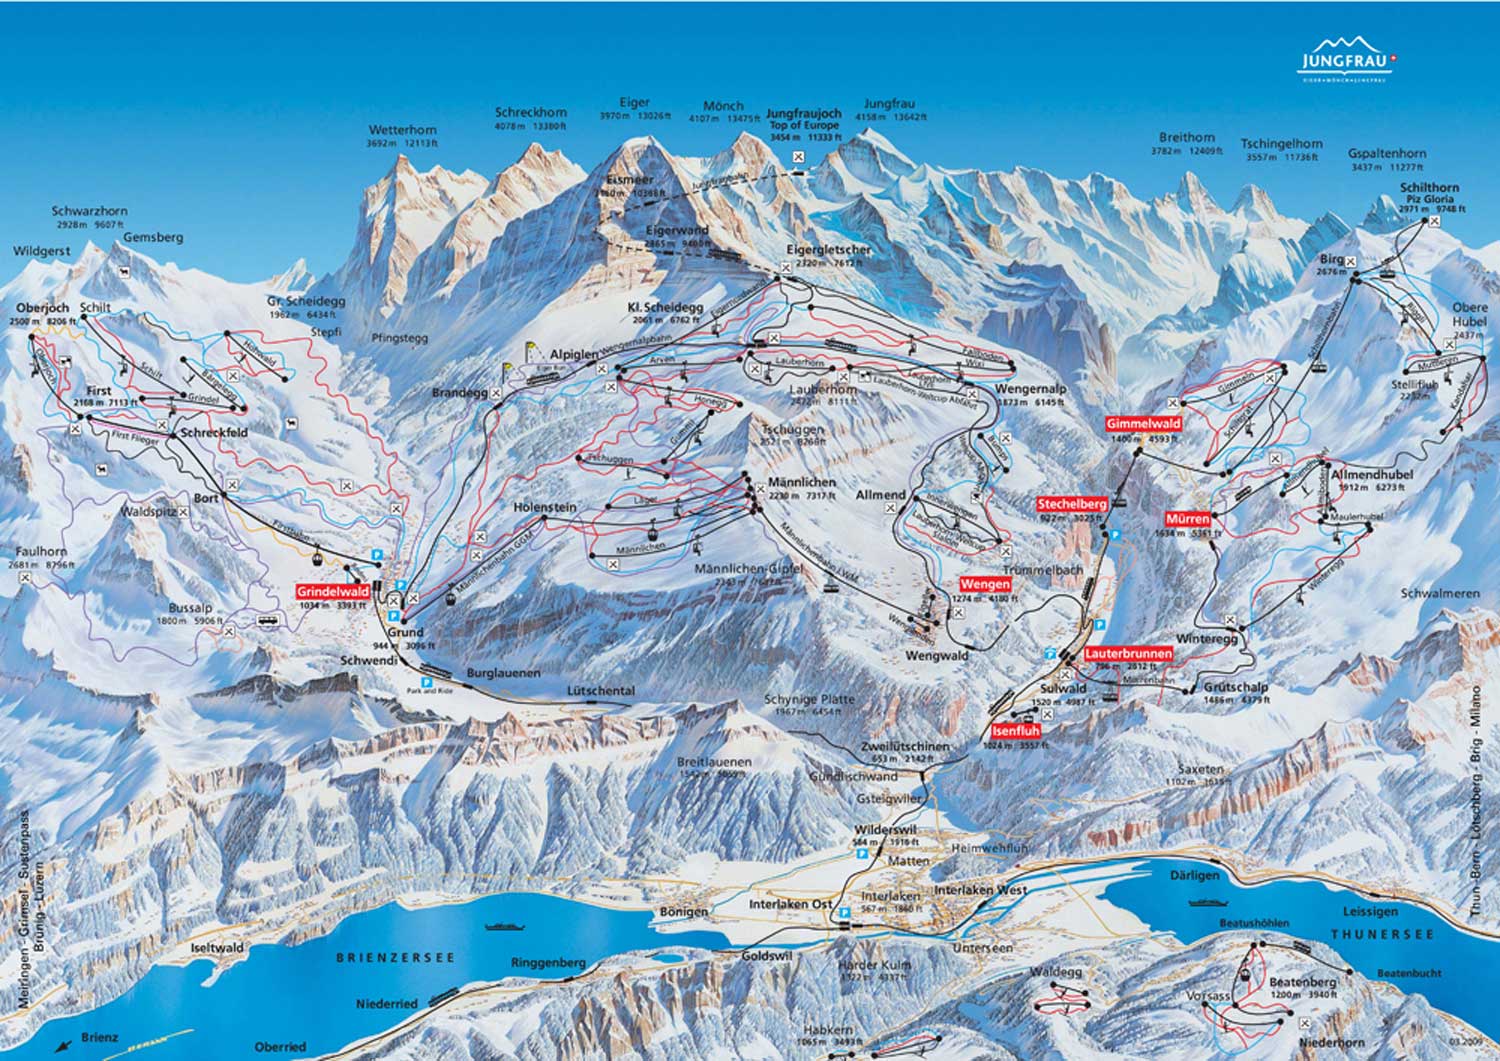 Lauterbrunnen – Jungfrau Ski Region